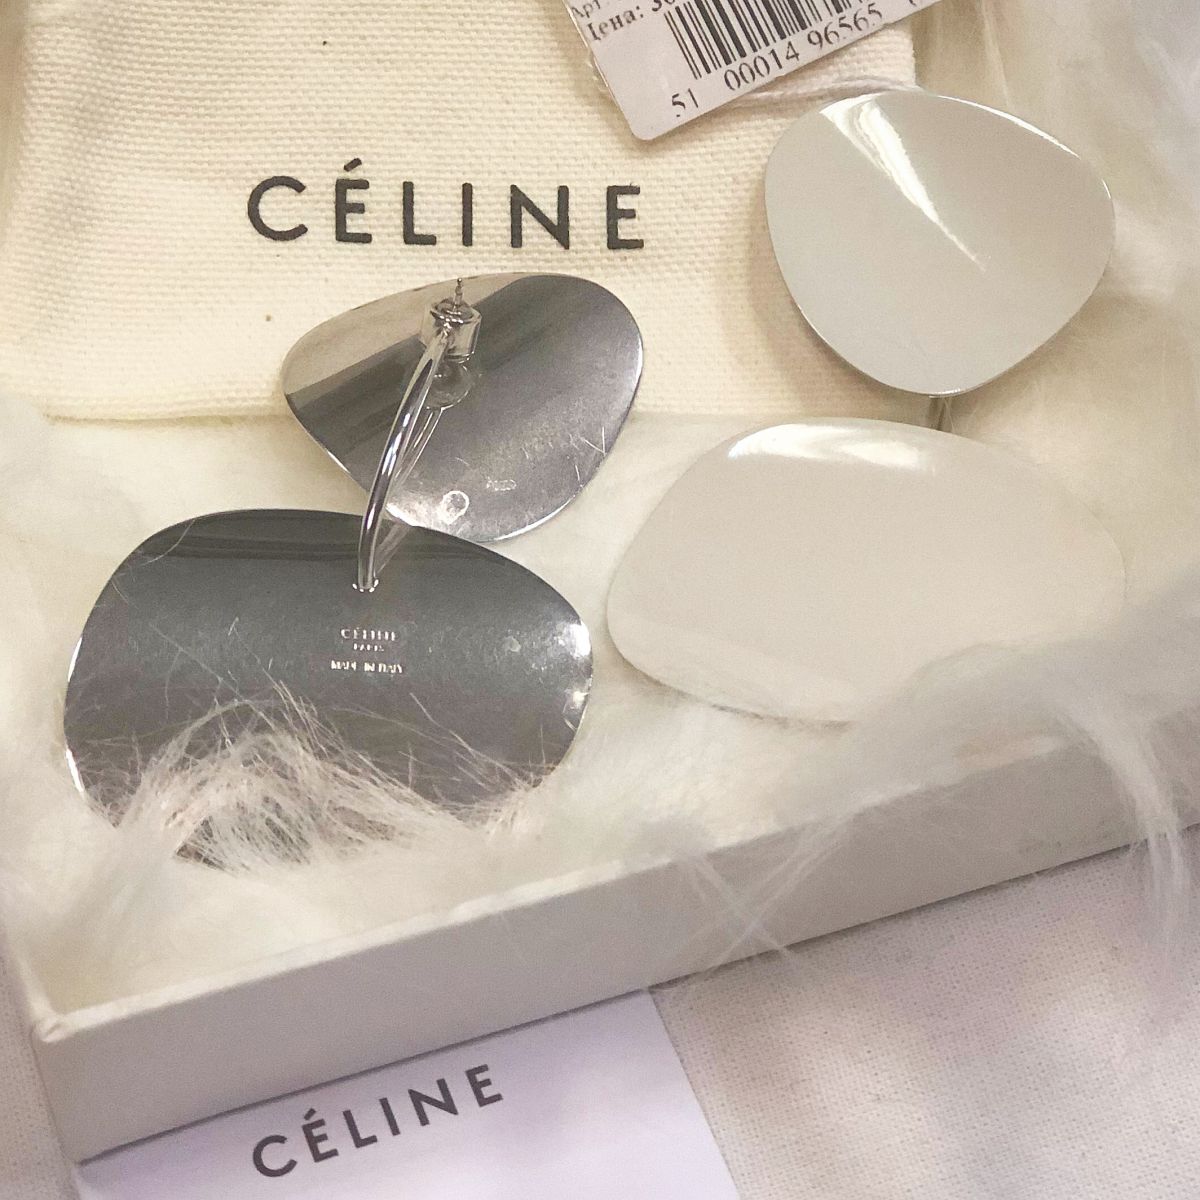 Серьги Celine  цена 23 078 руб / с ценником / упаковка 